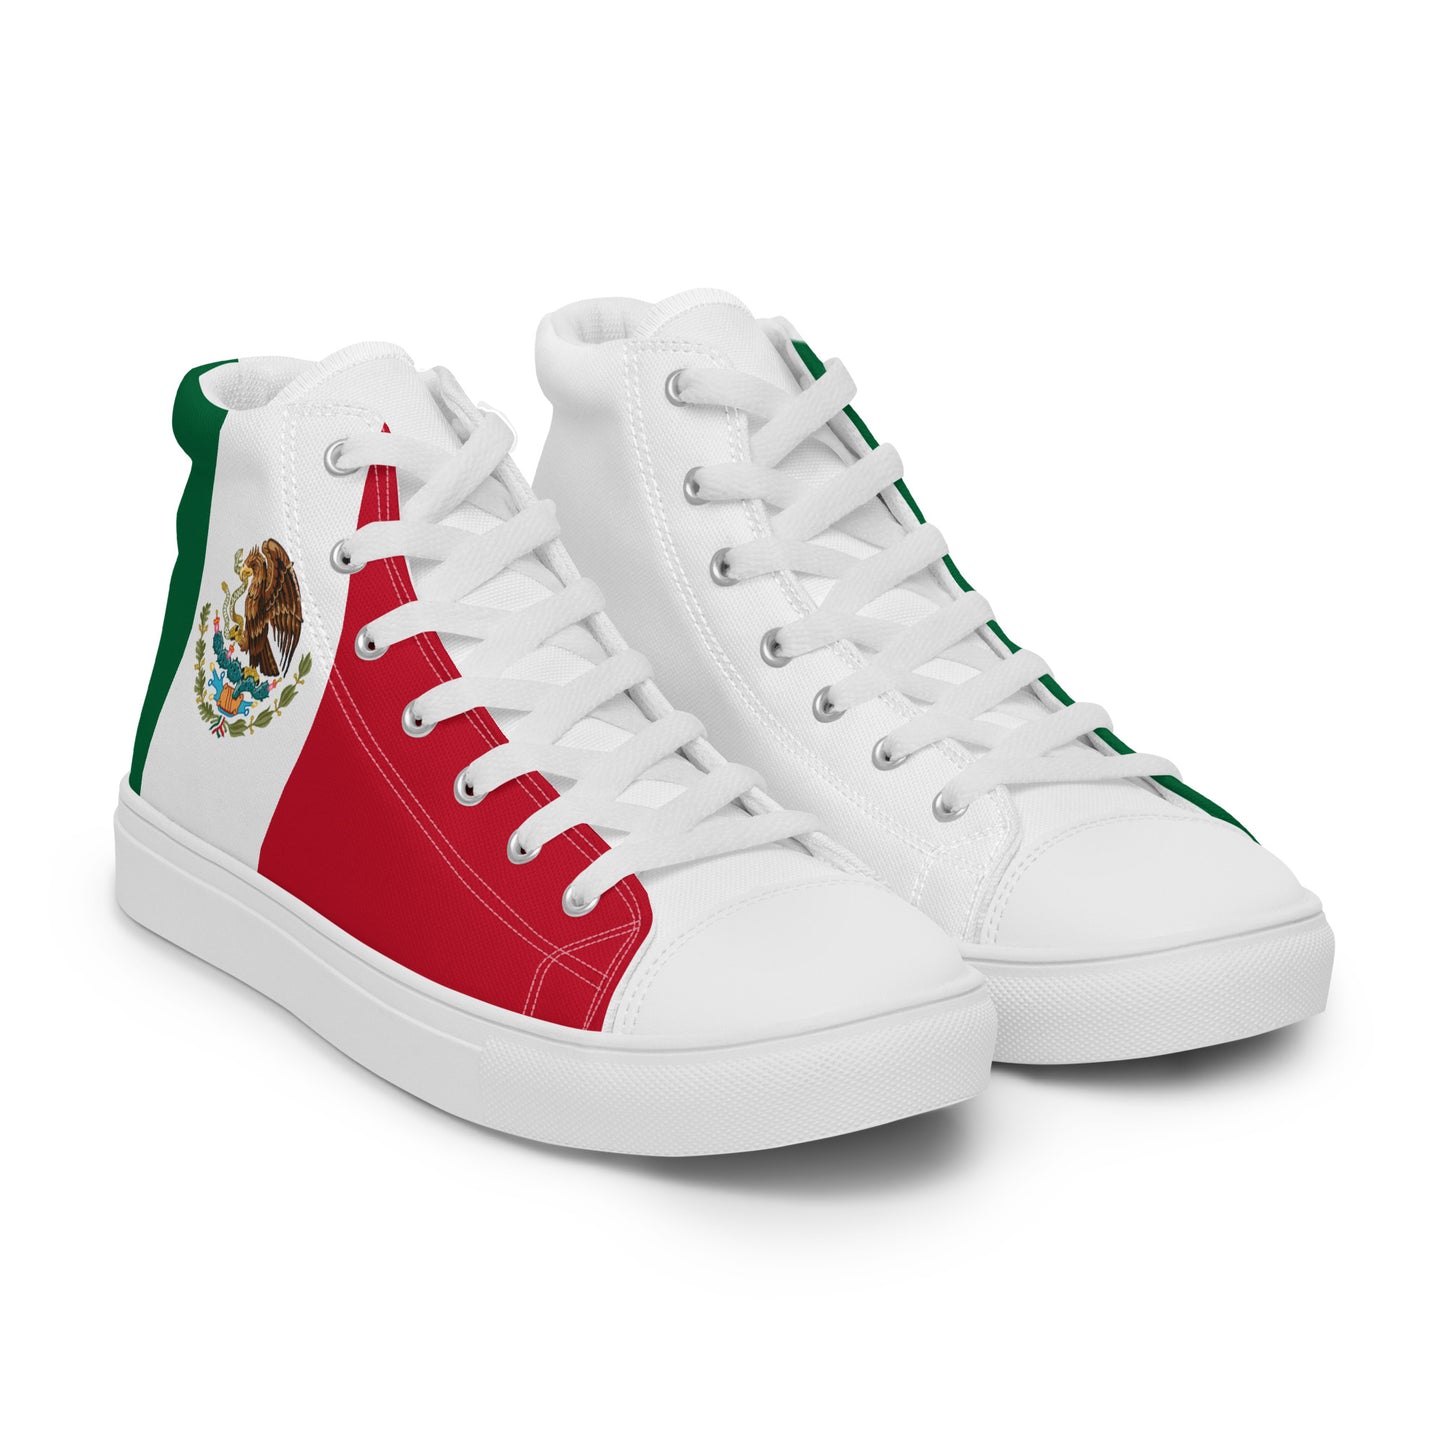 México - Women - Bandera - High top shoes